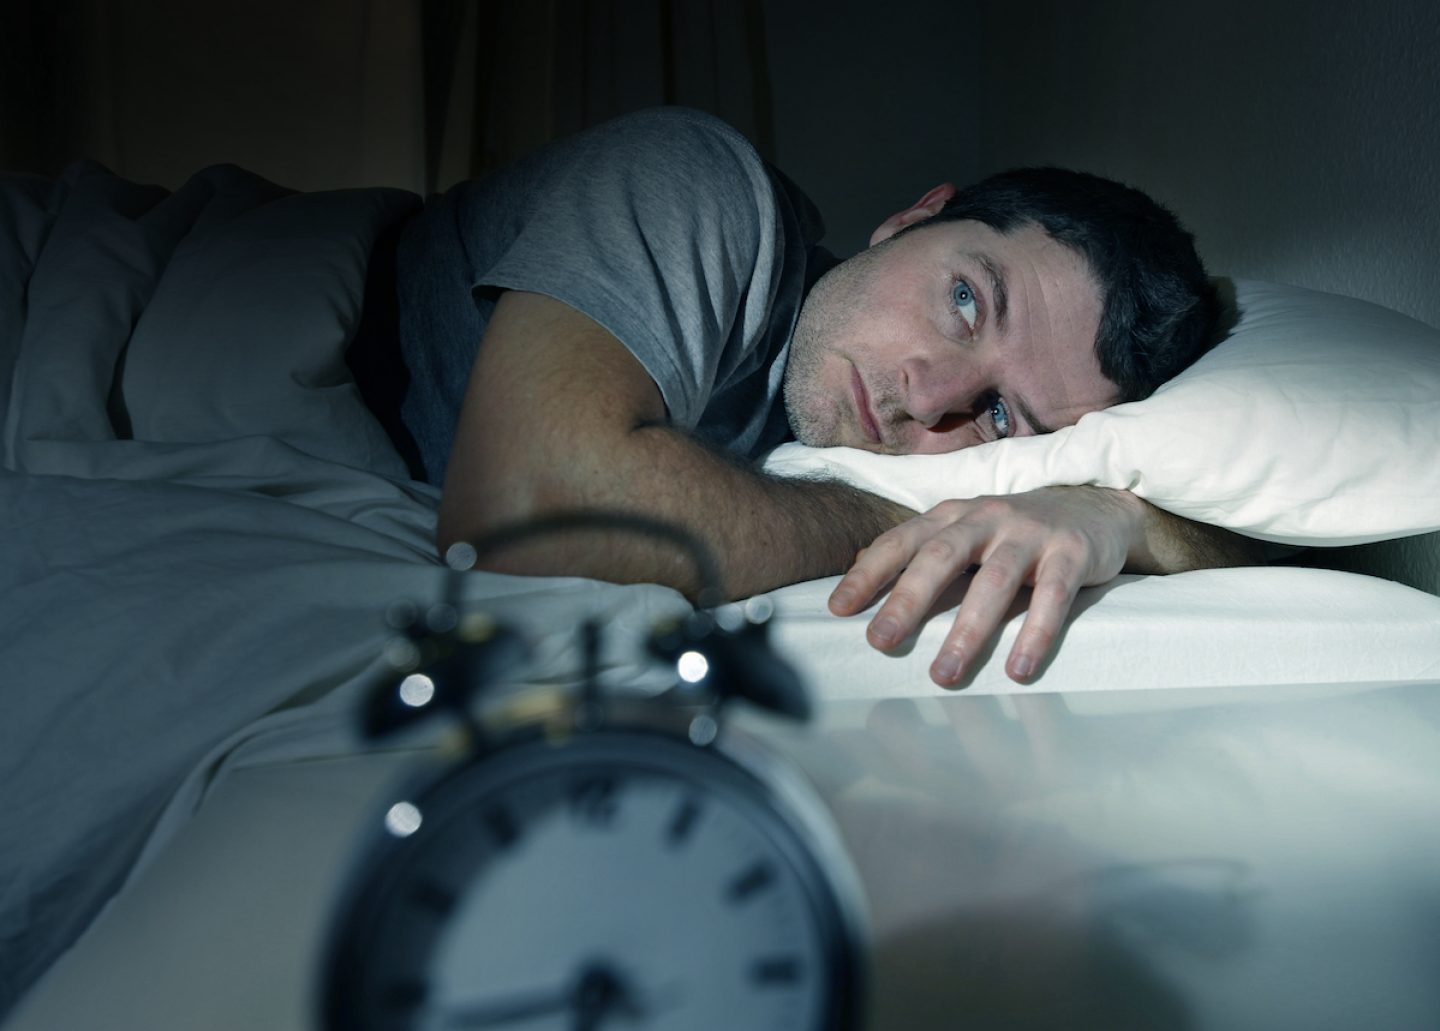 Wenn das Einschlafen zur Herausforderung wird: Revenge Bedtime Procrastination erklärt